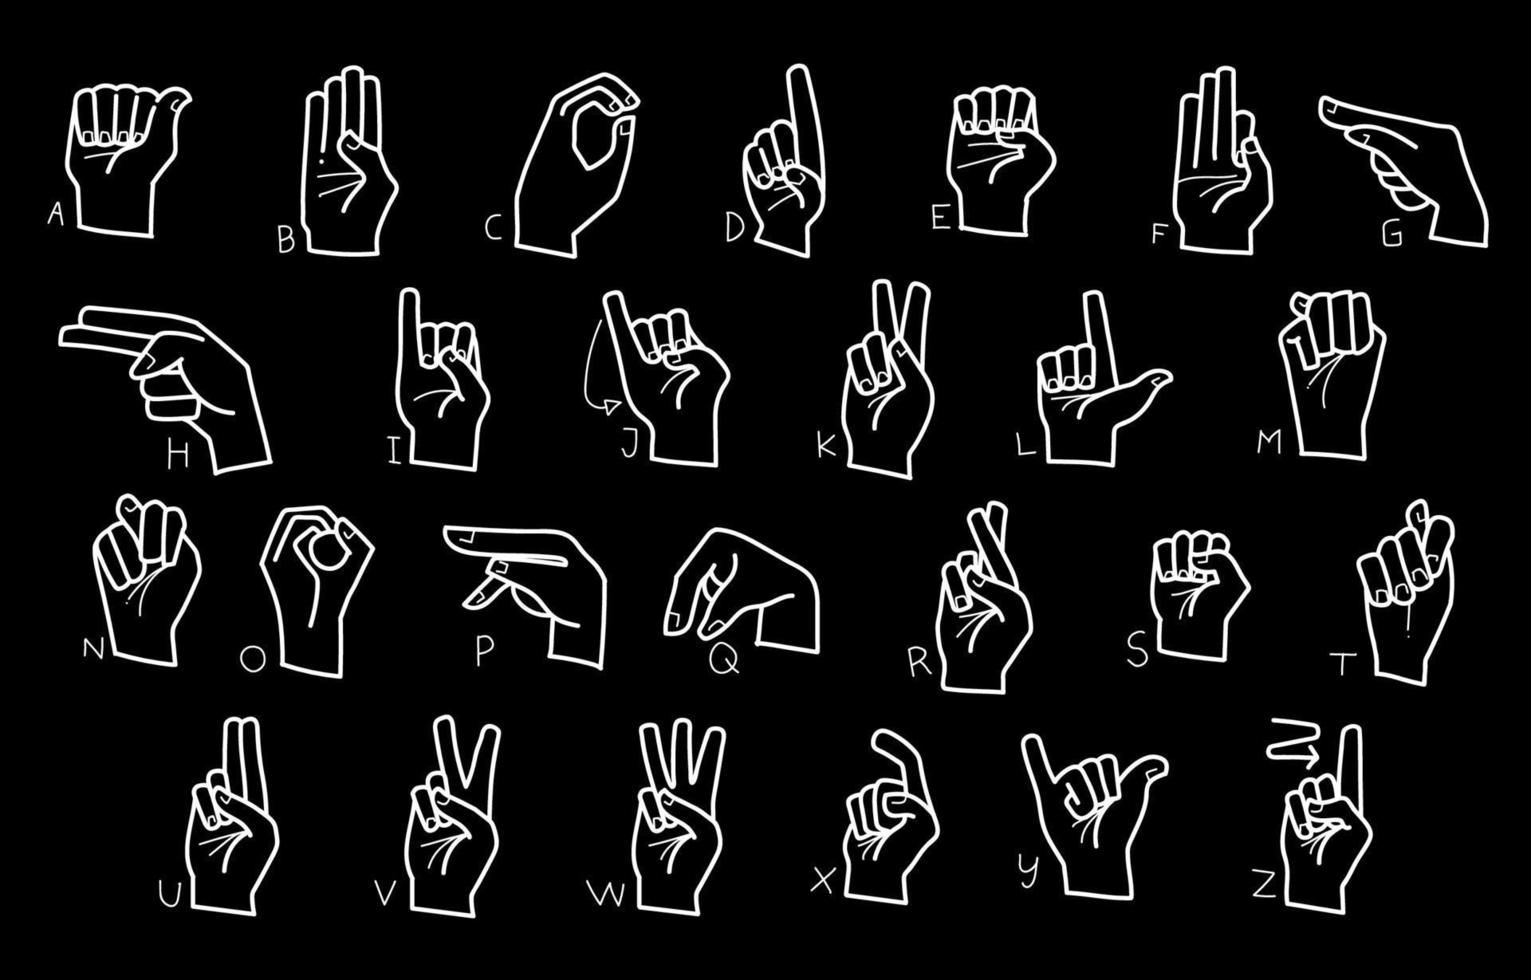 Doodle Sketch ASL Sign Language Alphabet Illustration vector